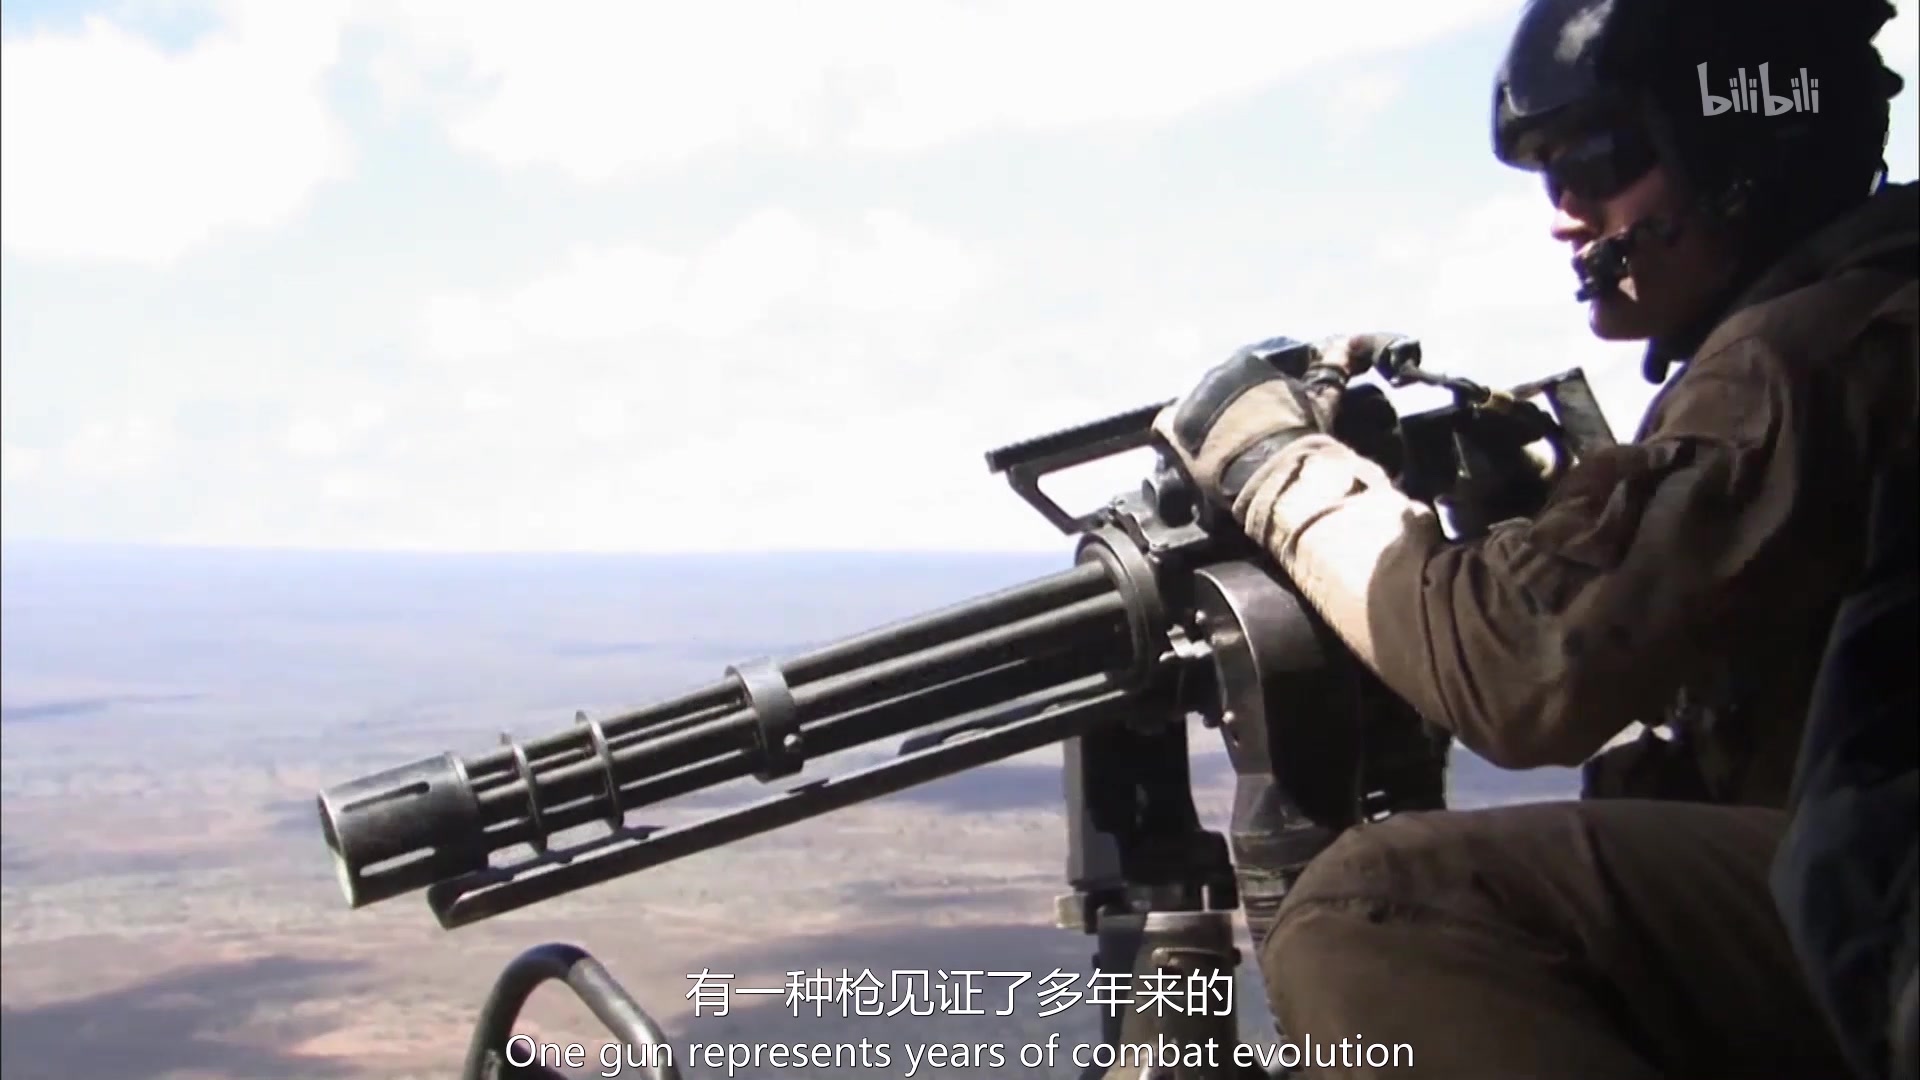 【决战军武】M134机枪可以打得你怀疑人生
